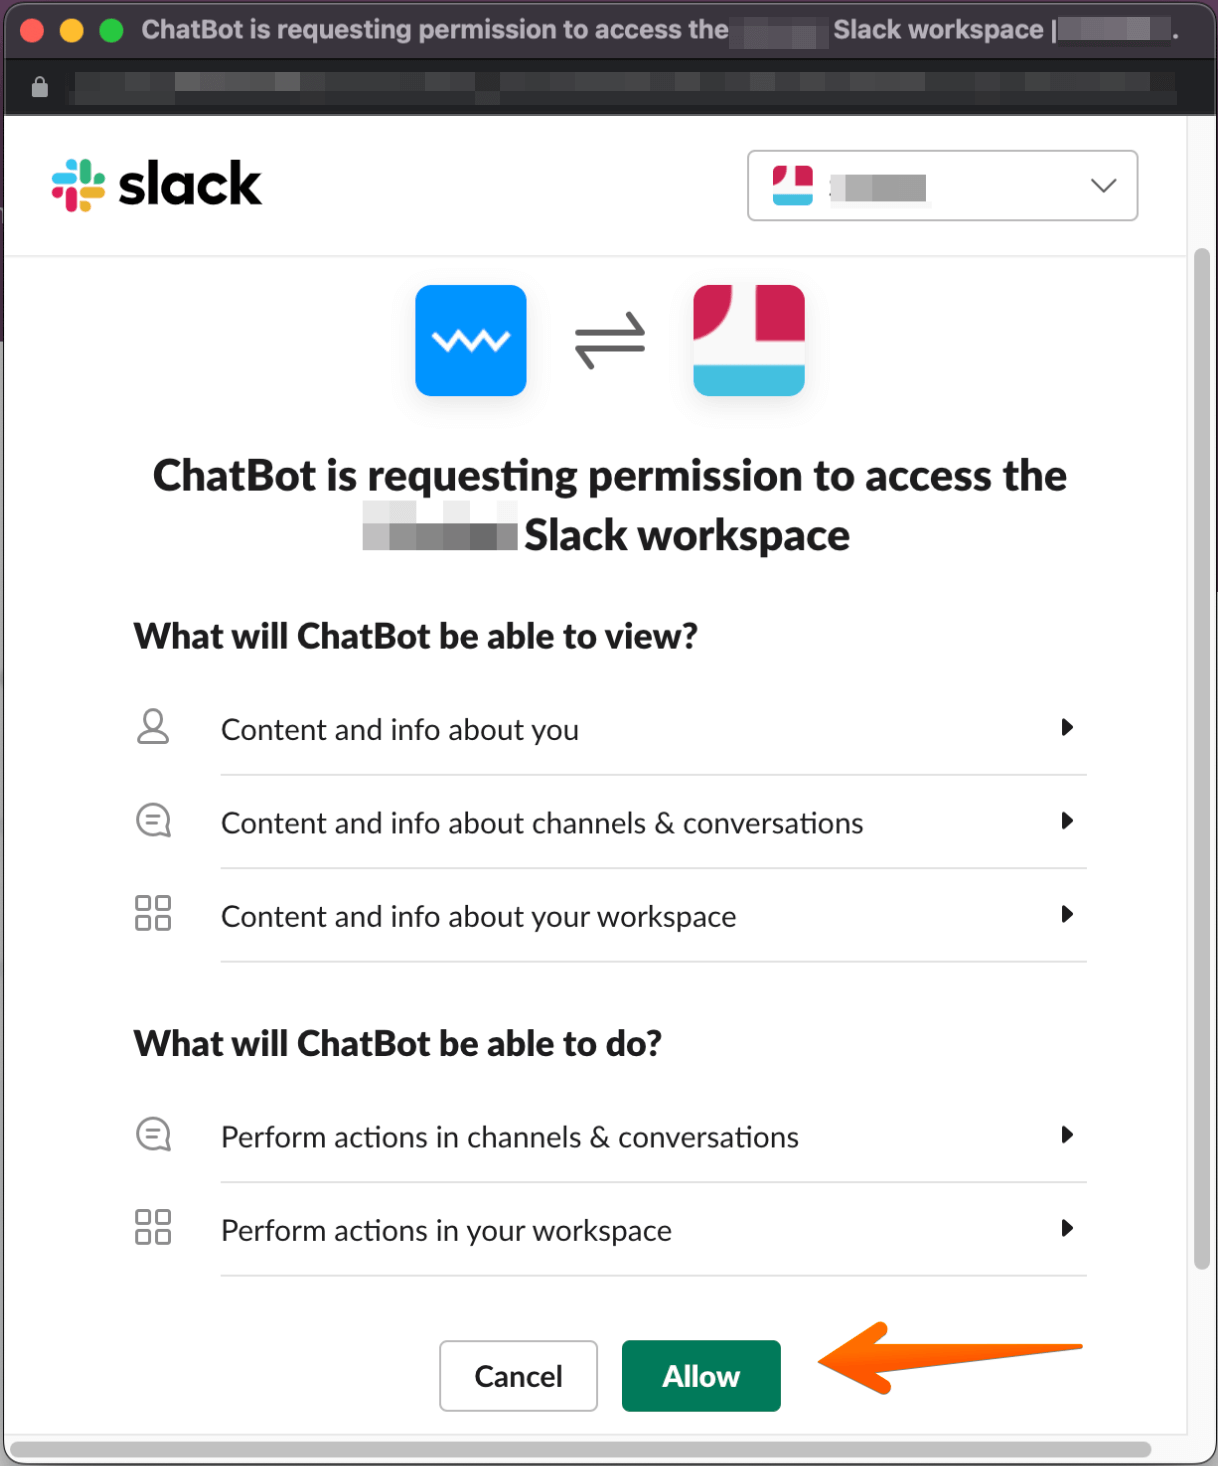 chatbot slack workspace permission